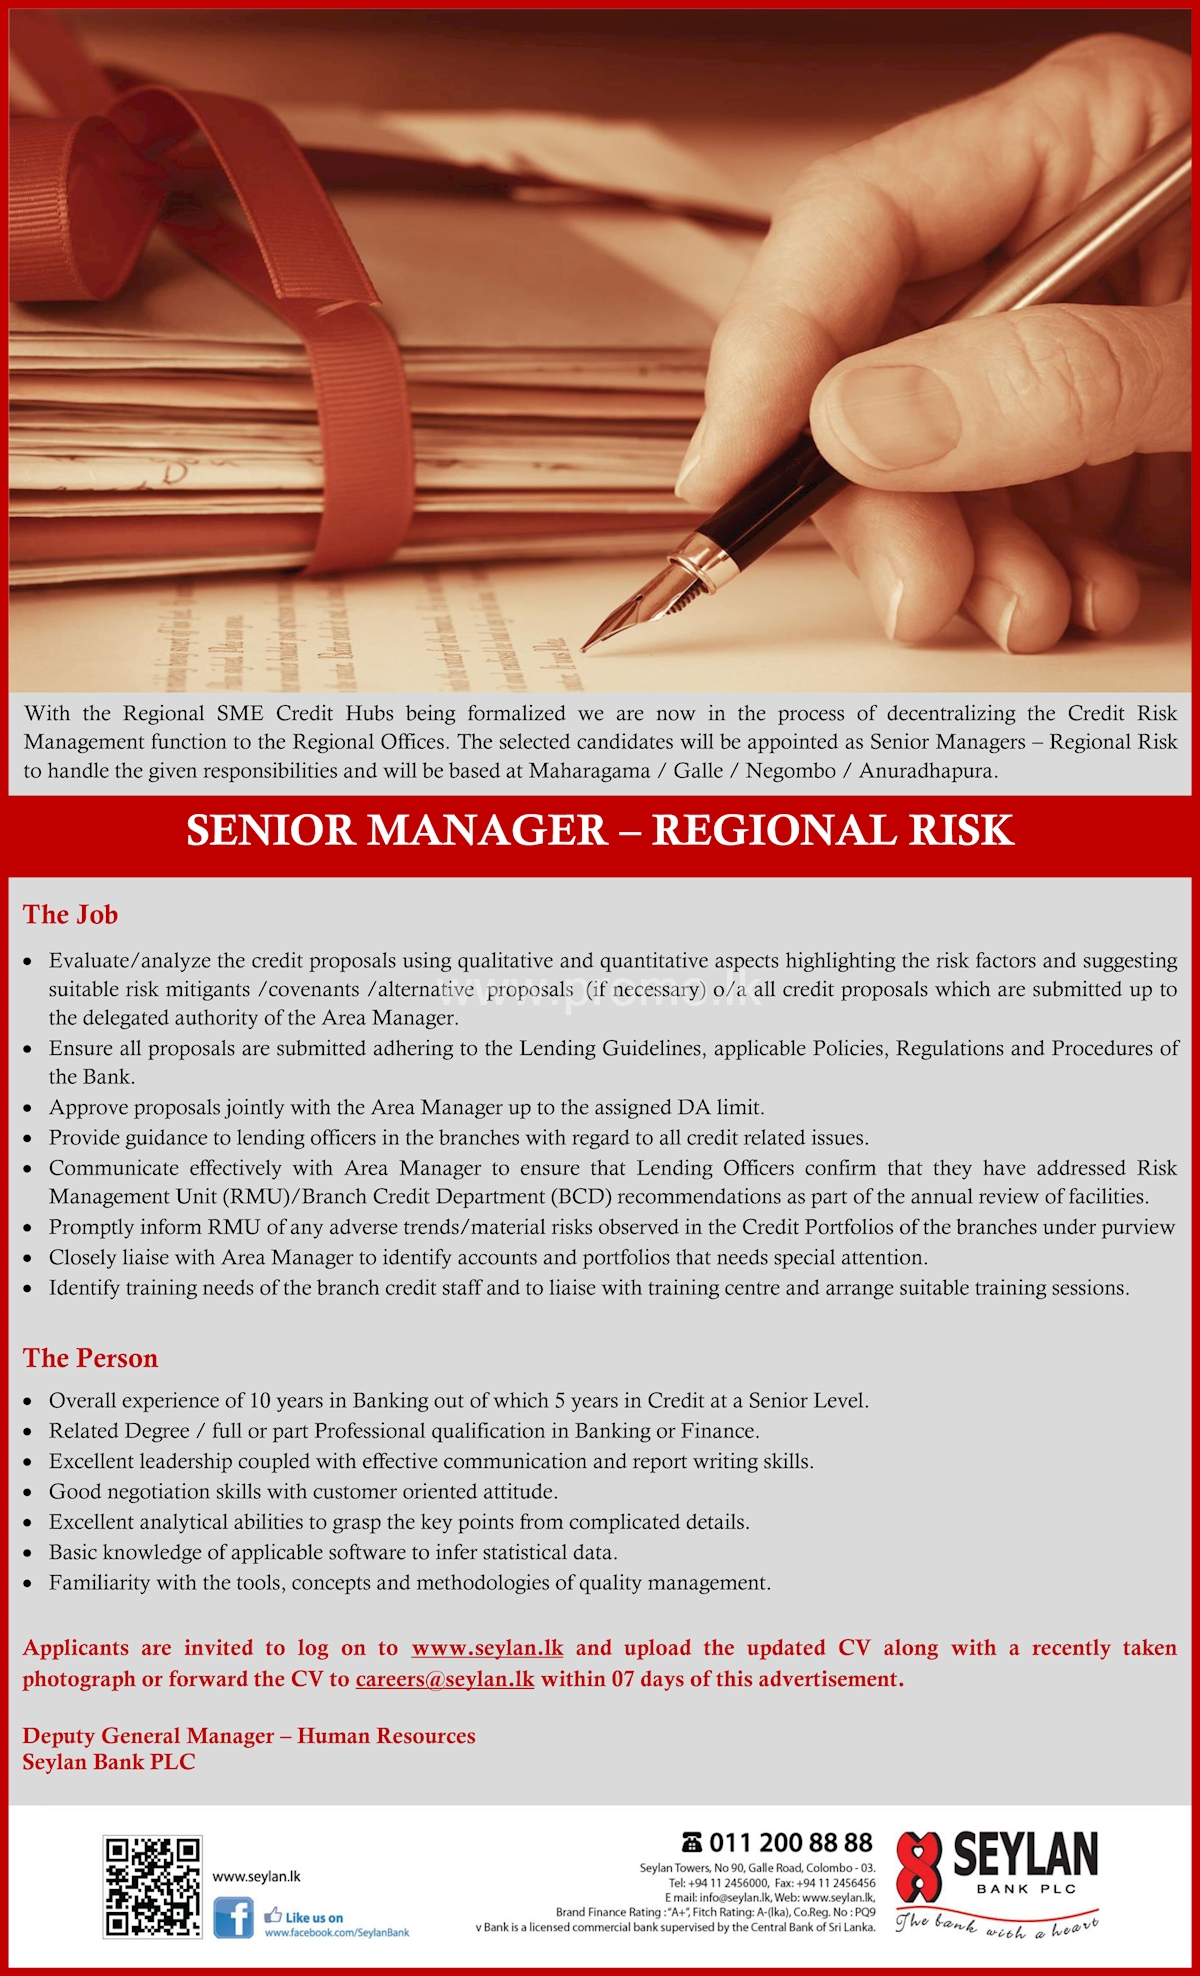 Senior Manager - Regional Risk